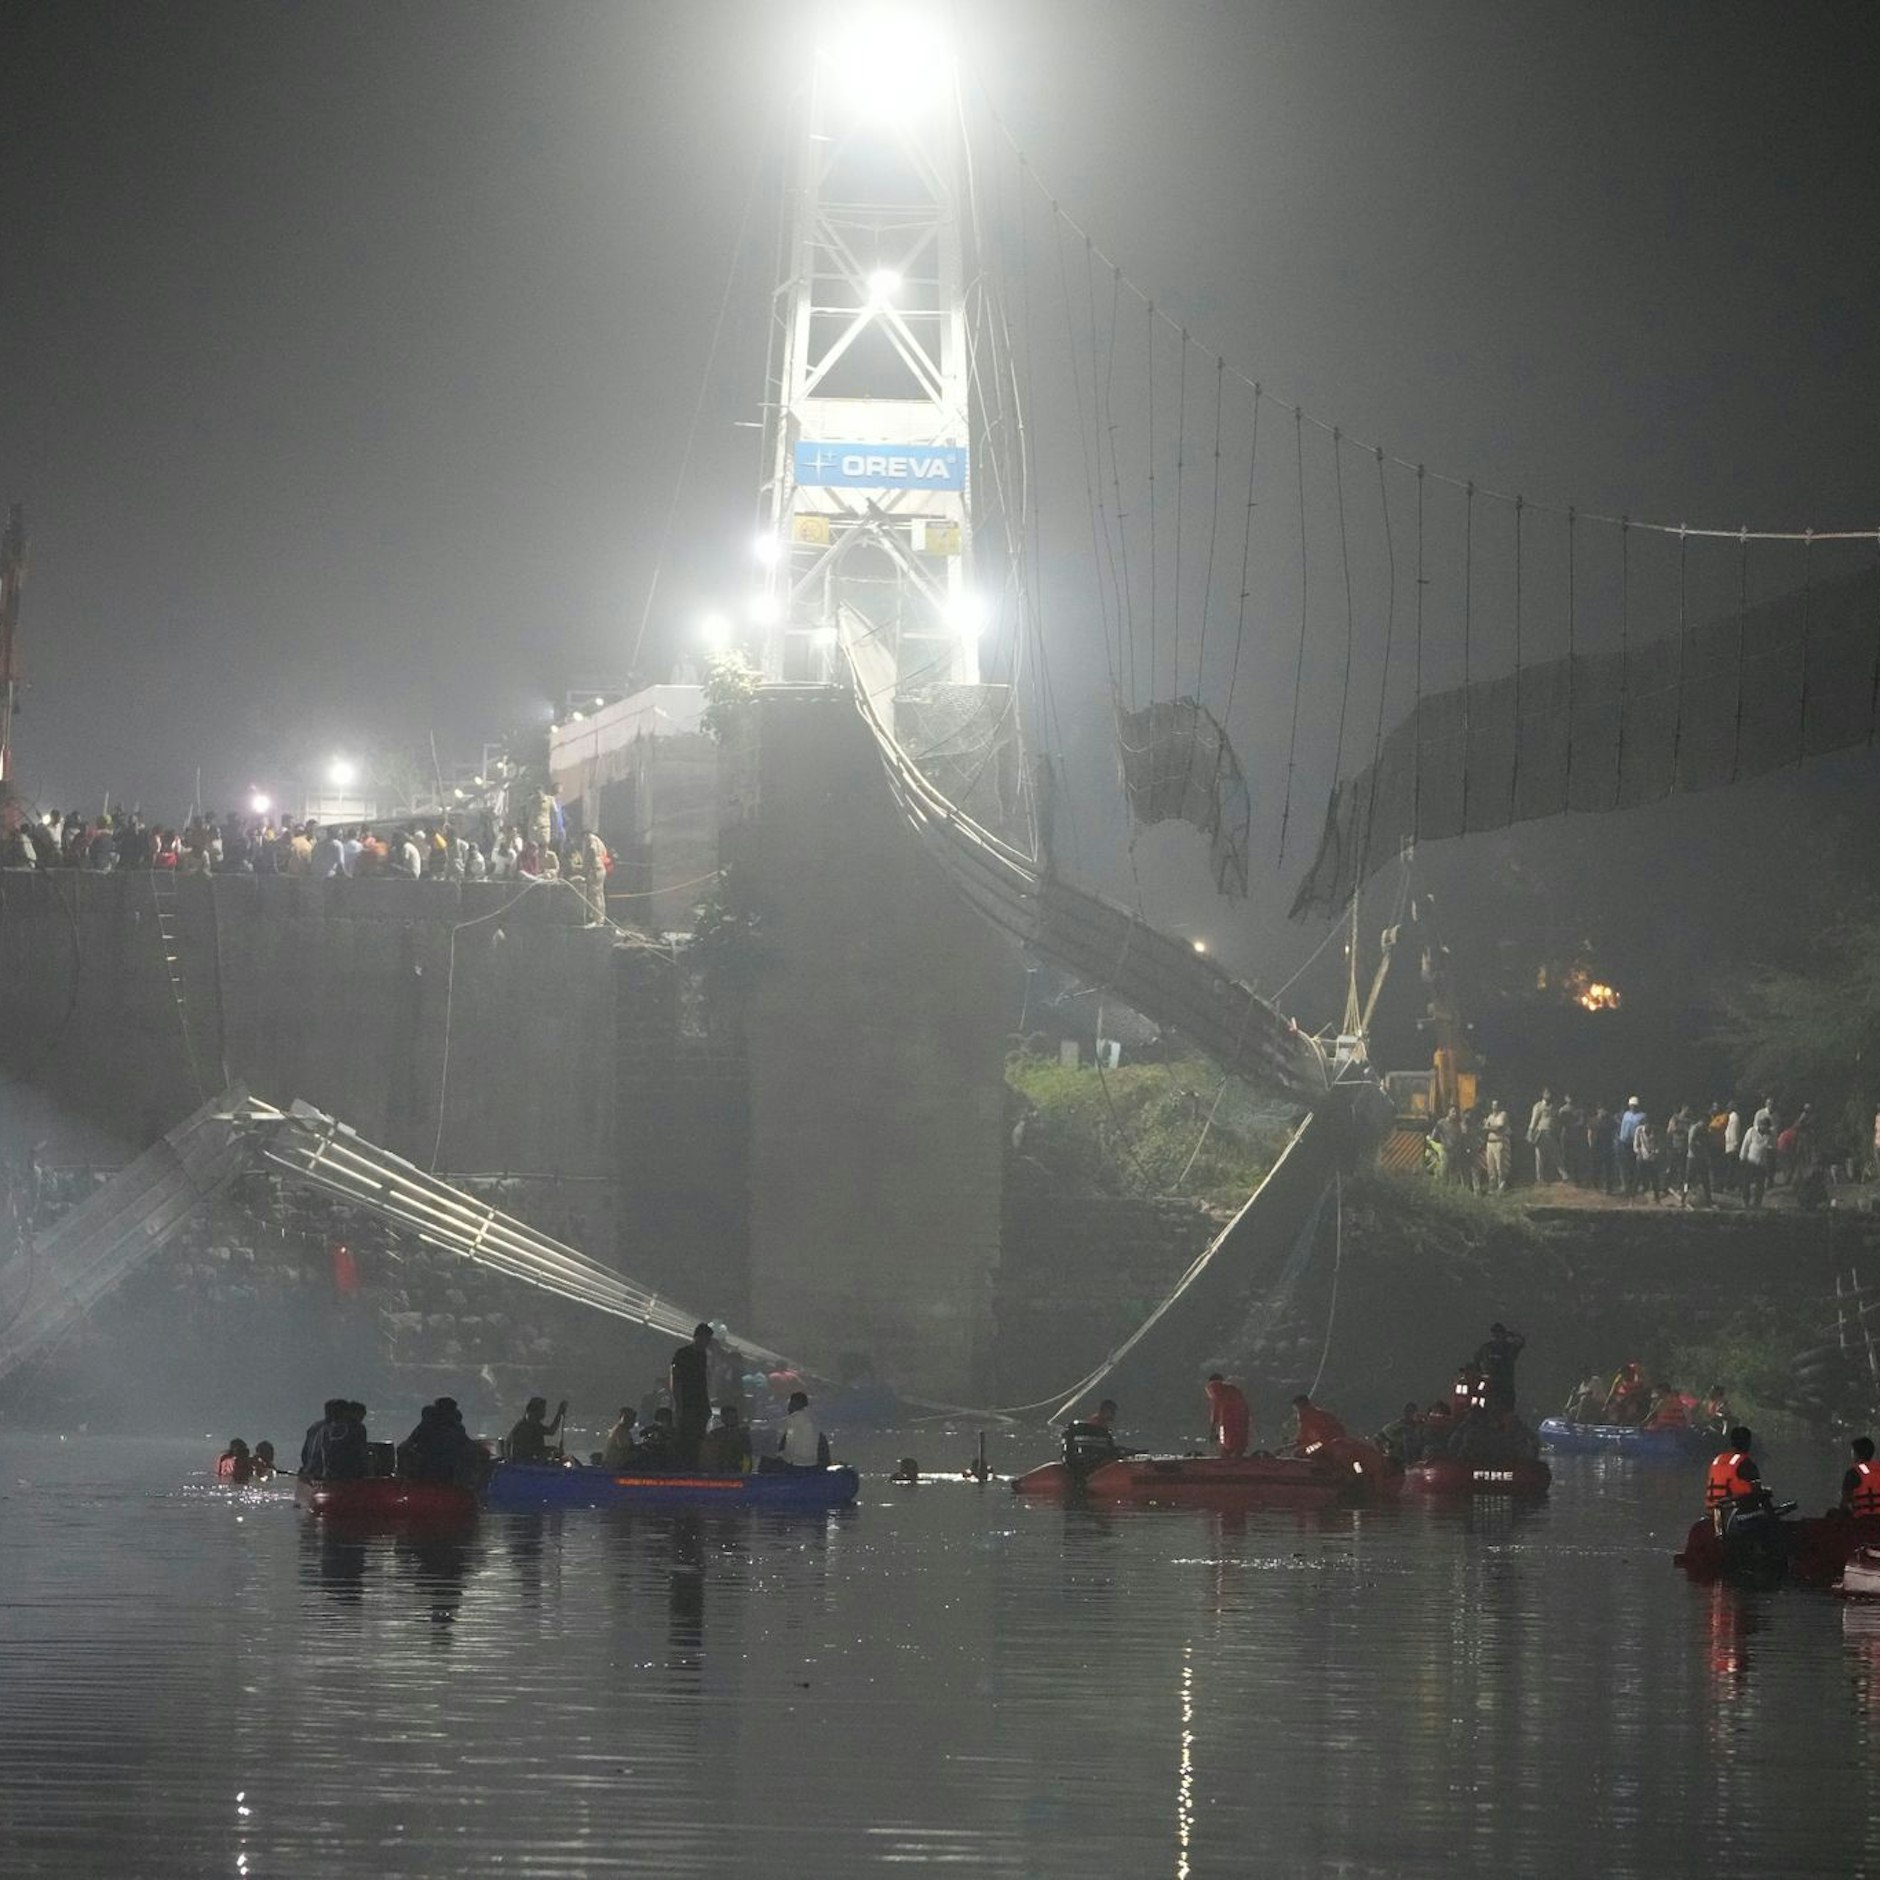 Image - Mehr als 140 Tote bei Einsturz von Hängebrücke in Indien